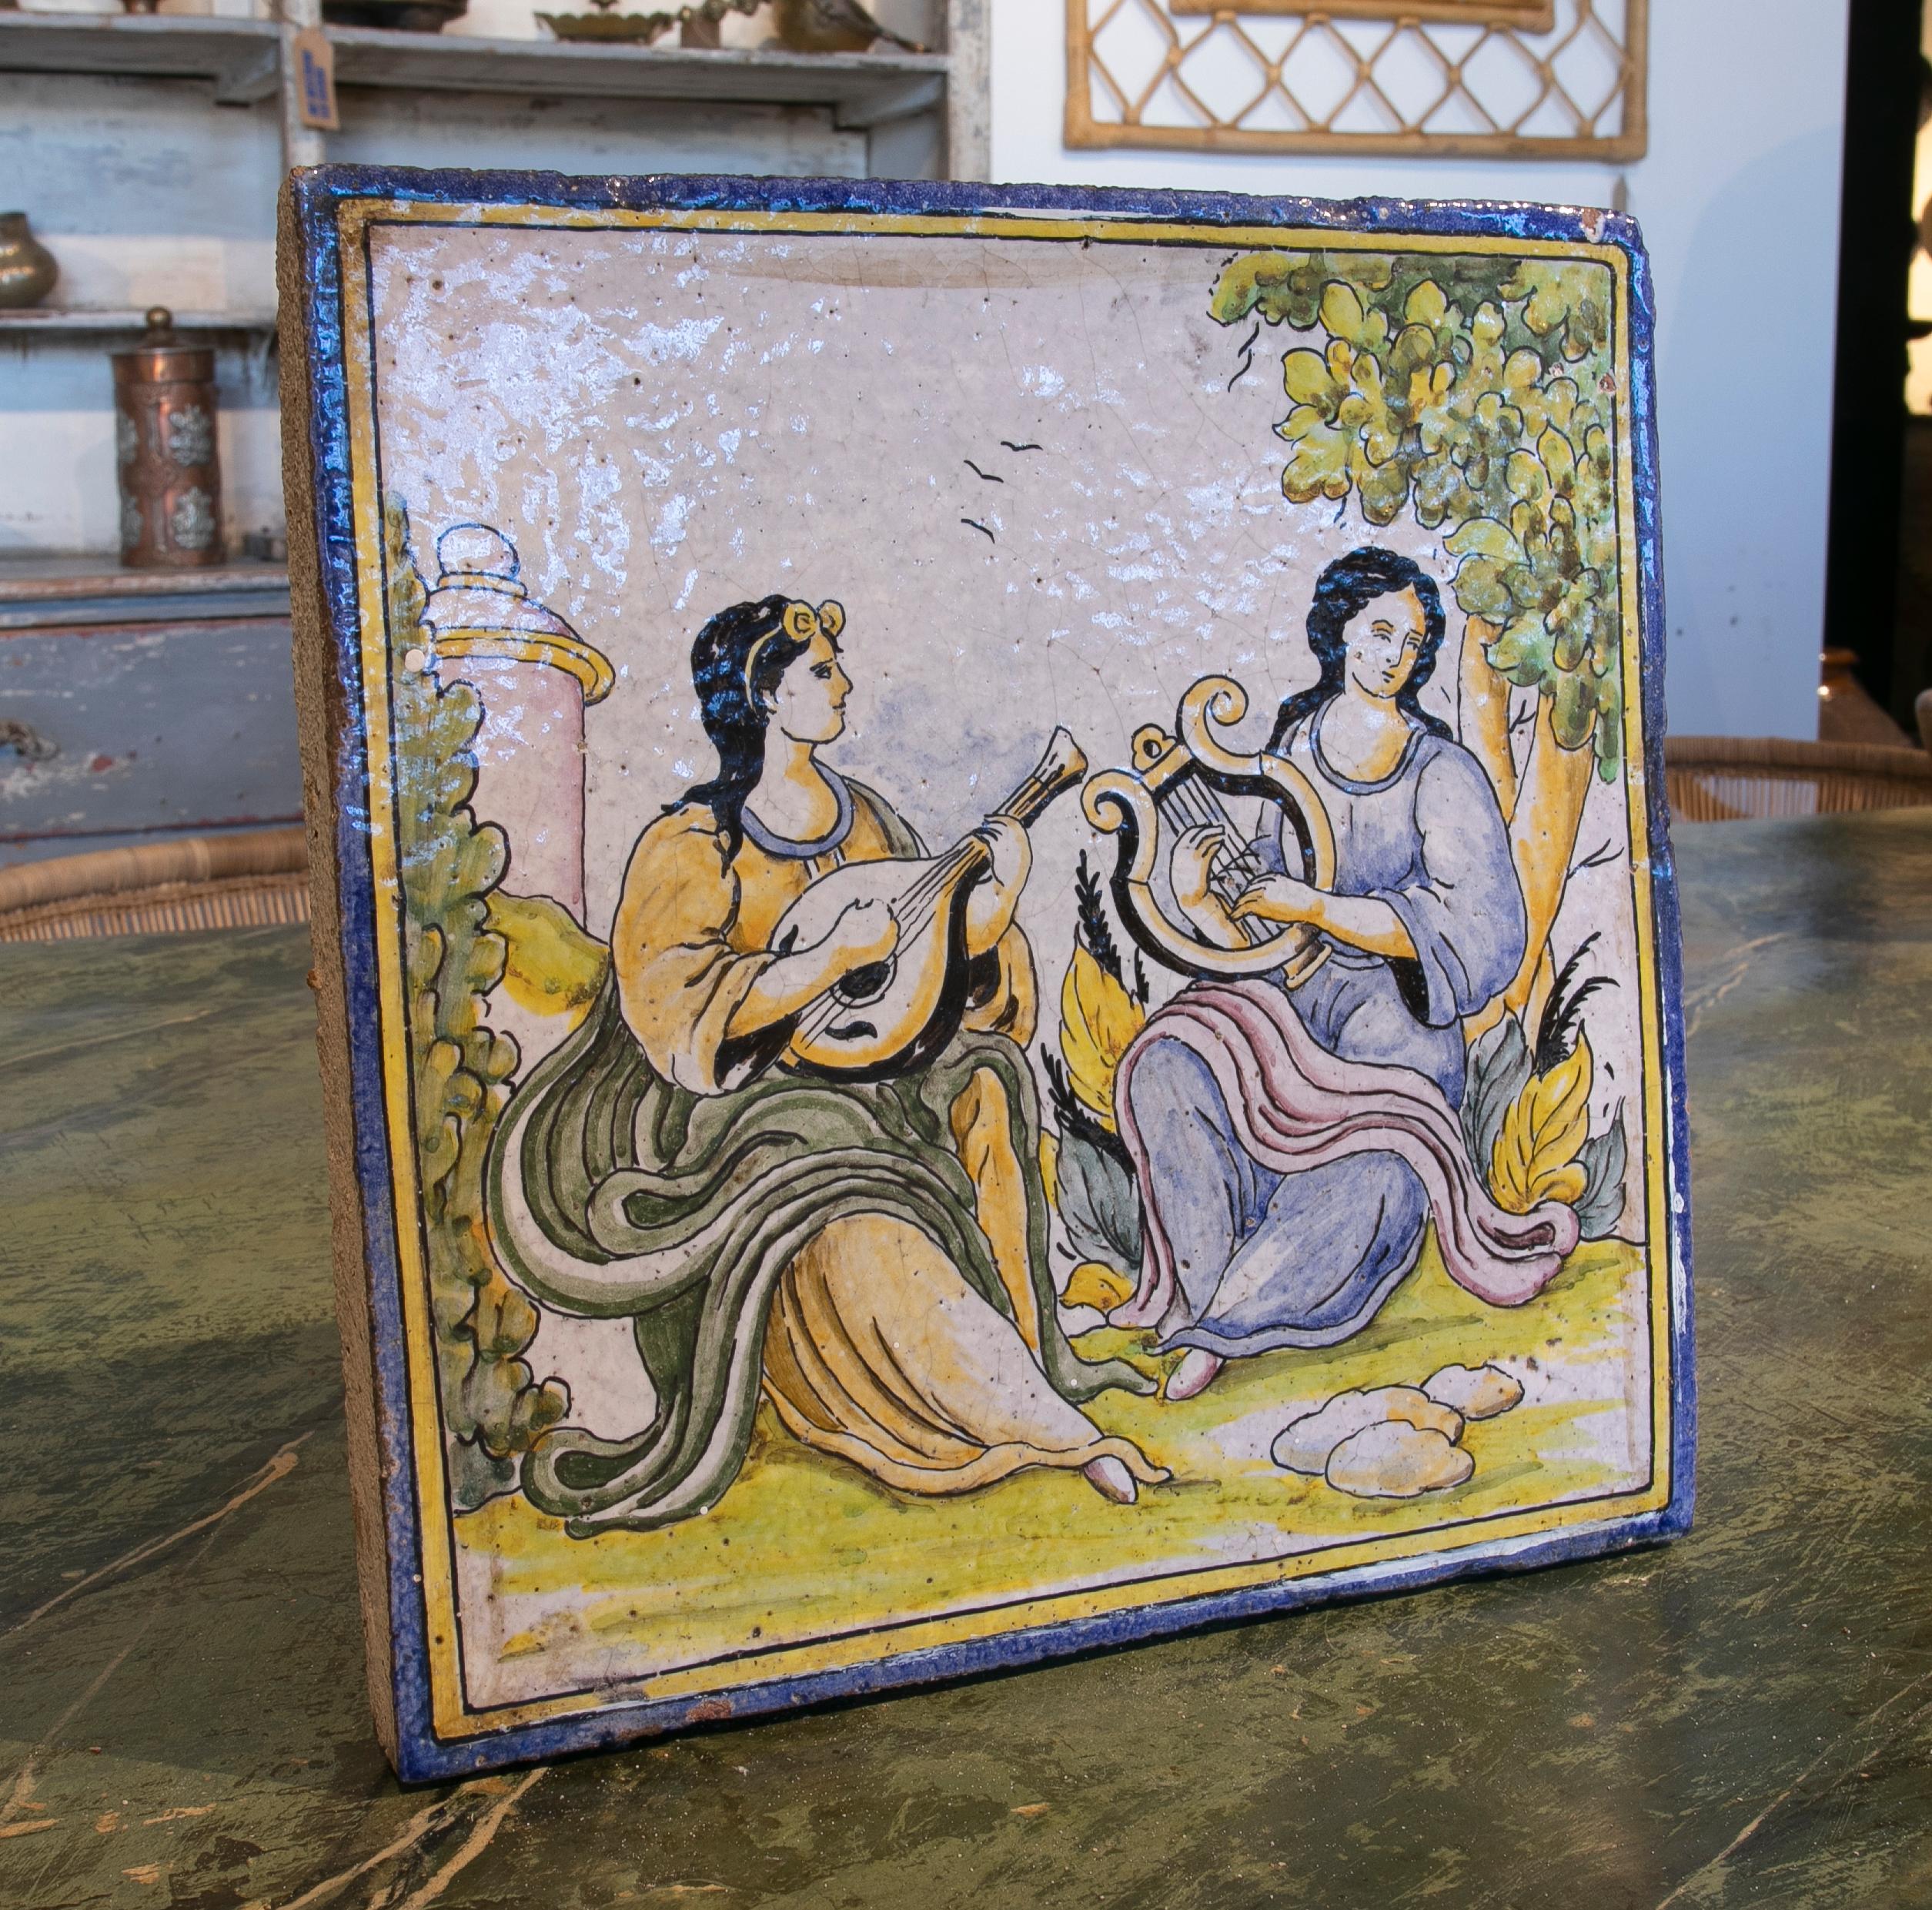 Carreau de céramique émaillée espagnol des années 1970, peint à la main, avec une scène de personnages.